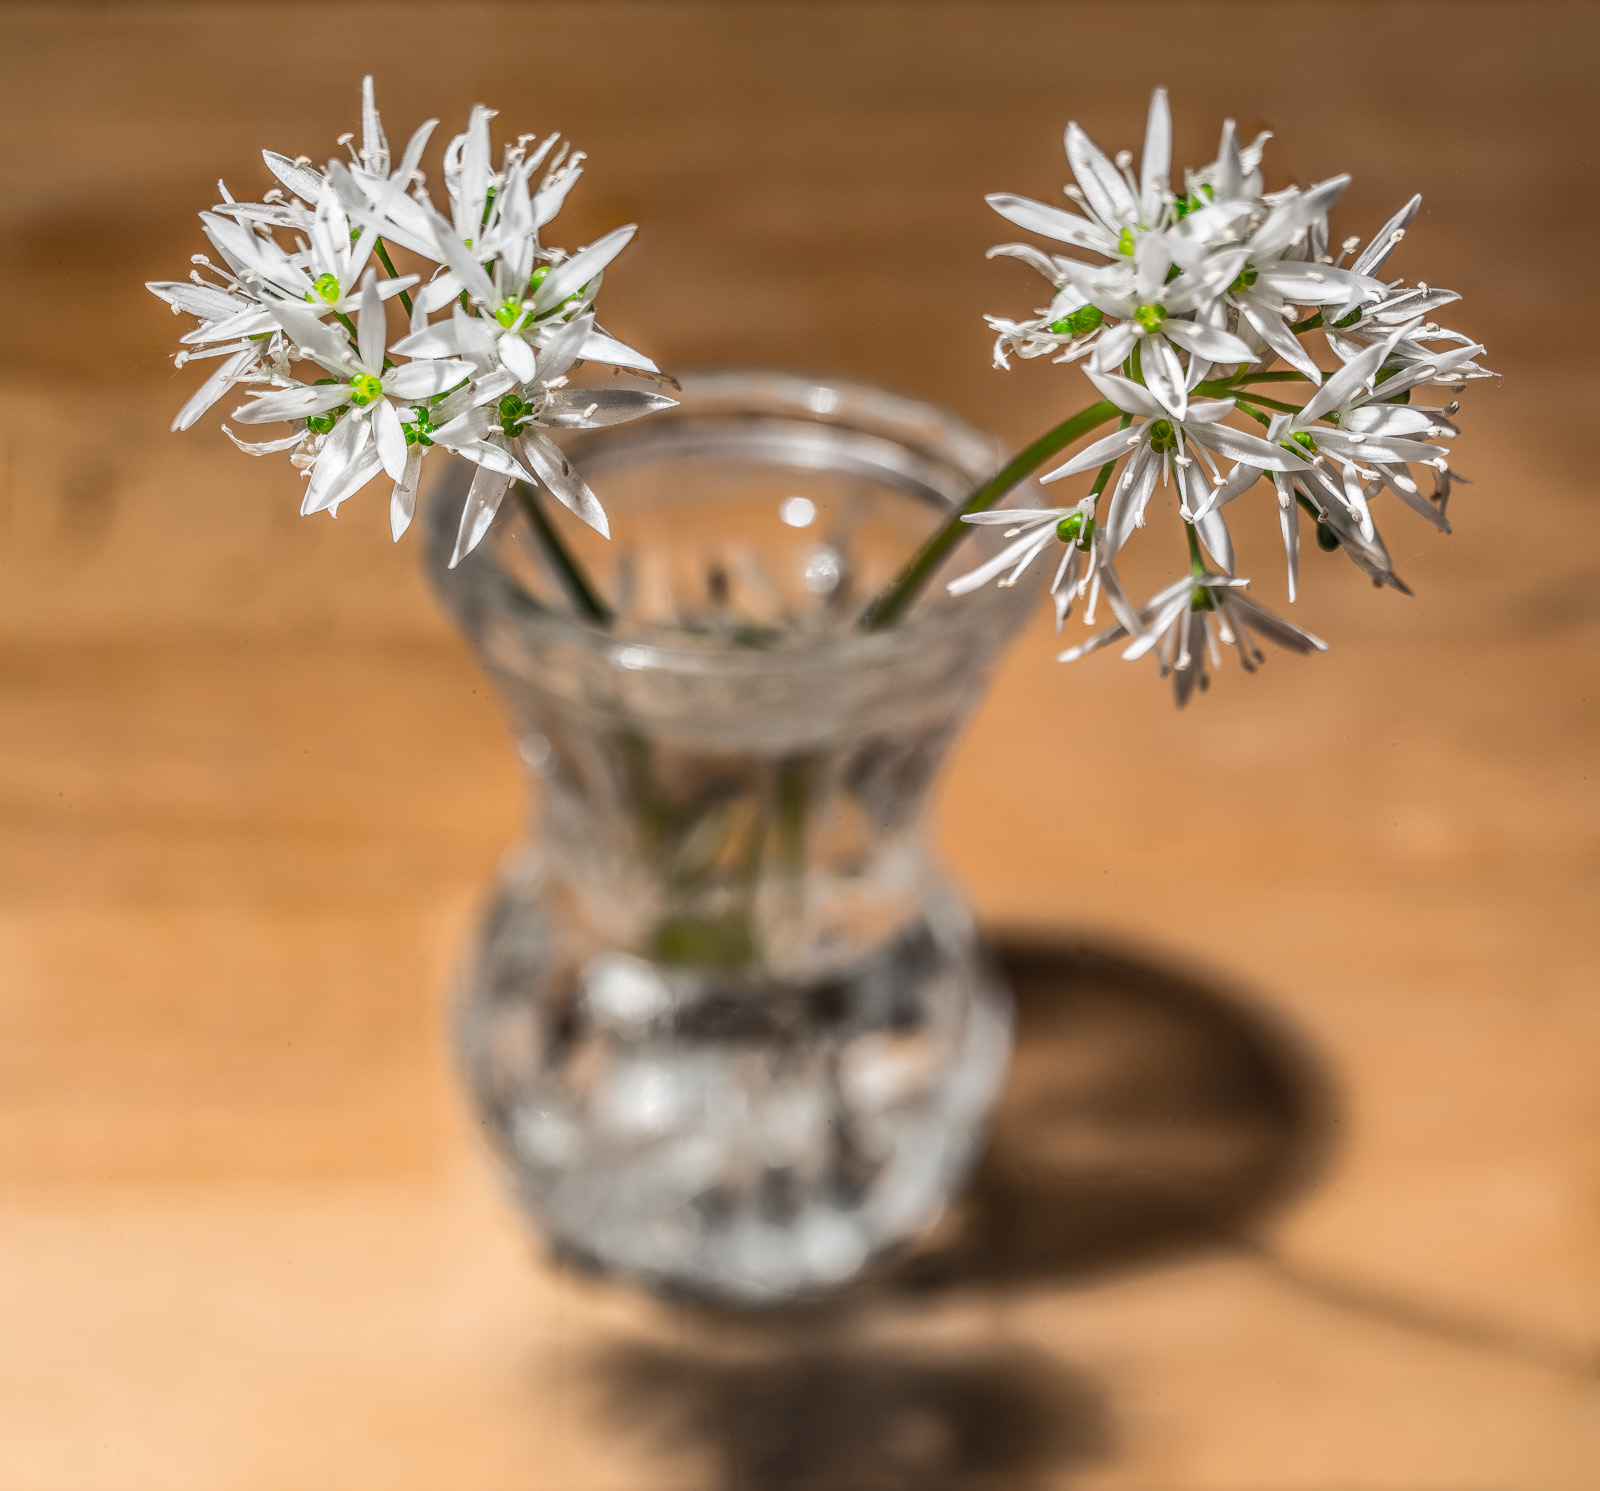 Auf einer Buchenholzplatte steht eine kleine Kristallglas-Vase, darin zwei Stängel von Bärlauch mit je einer kugeligen weißen Blüte, eine nach links und eine nach rechts ragend. 